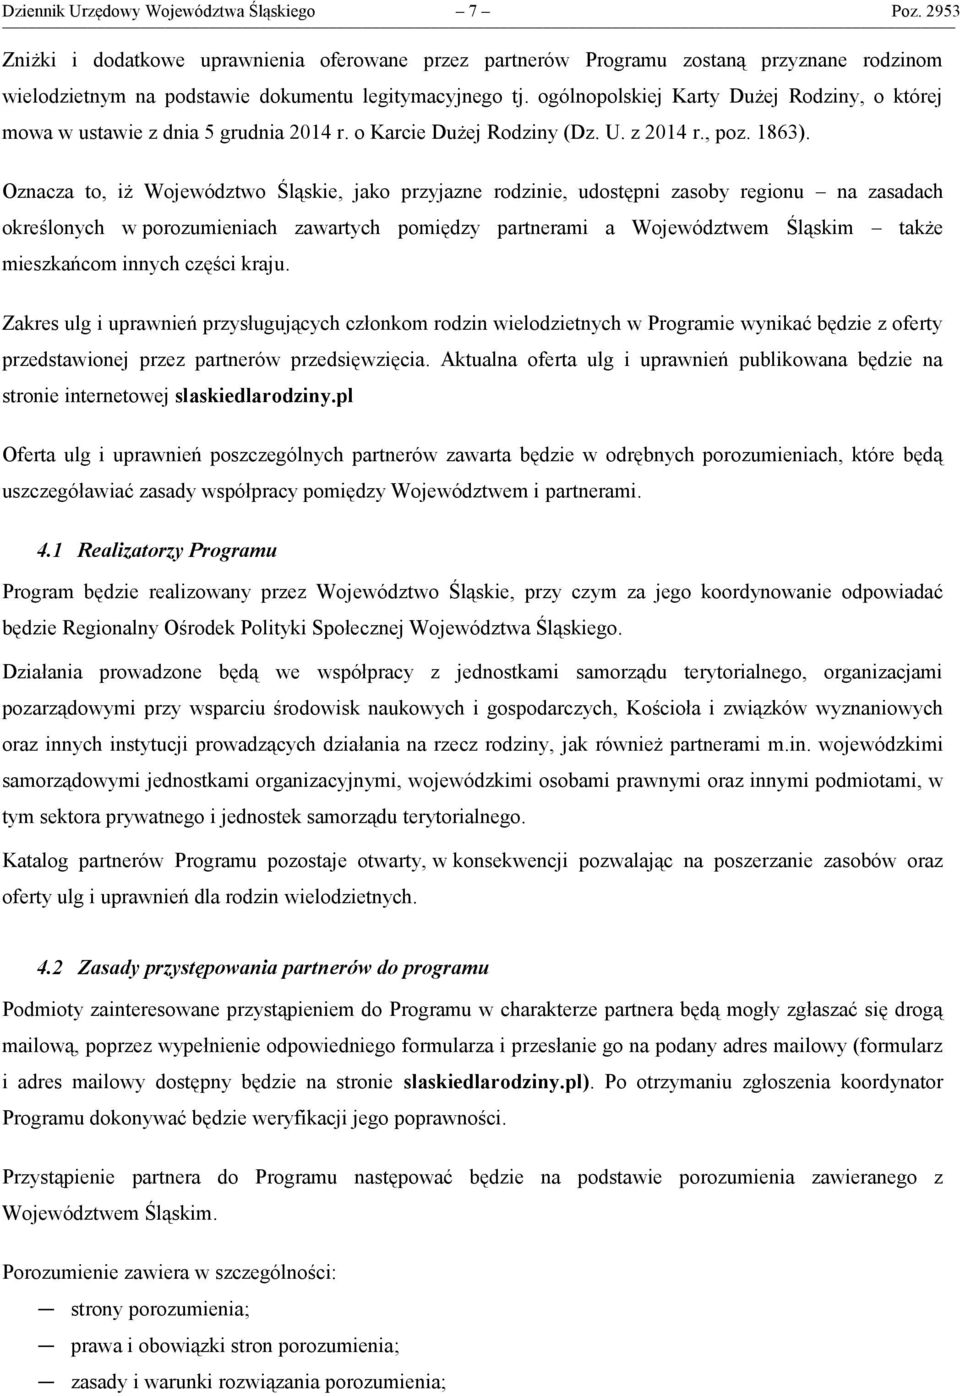 ogólnopolskiej Karty Dużej Rodziny, o której mowa w ustawie z dnia 5 grudnia 2014 r. o Karcie Dużej Rodziny (Dz. U. z 2014 r., poz. 1863).